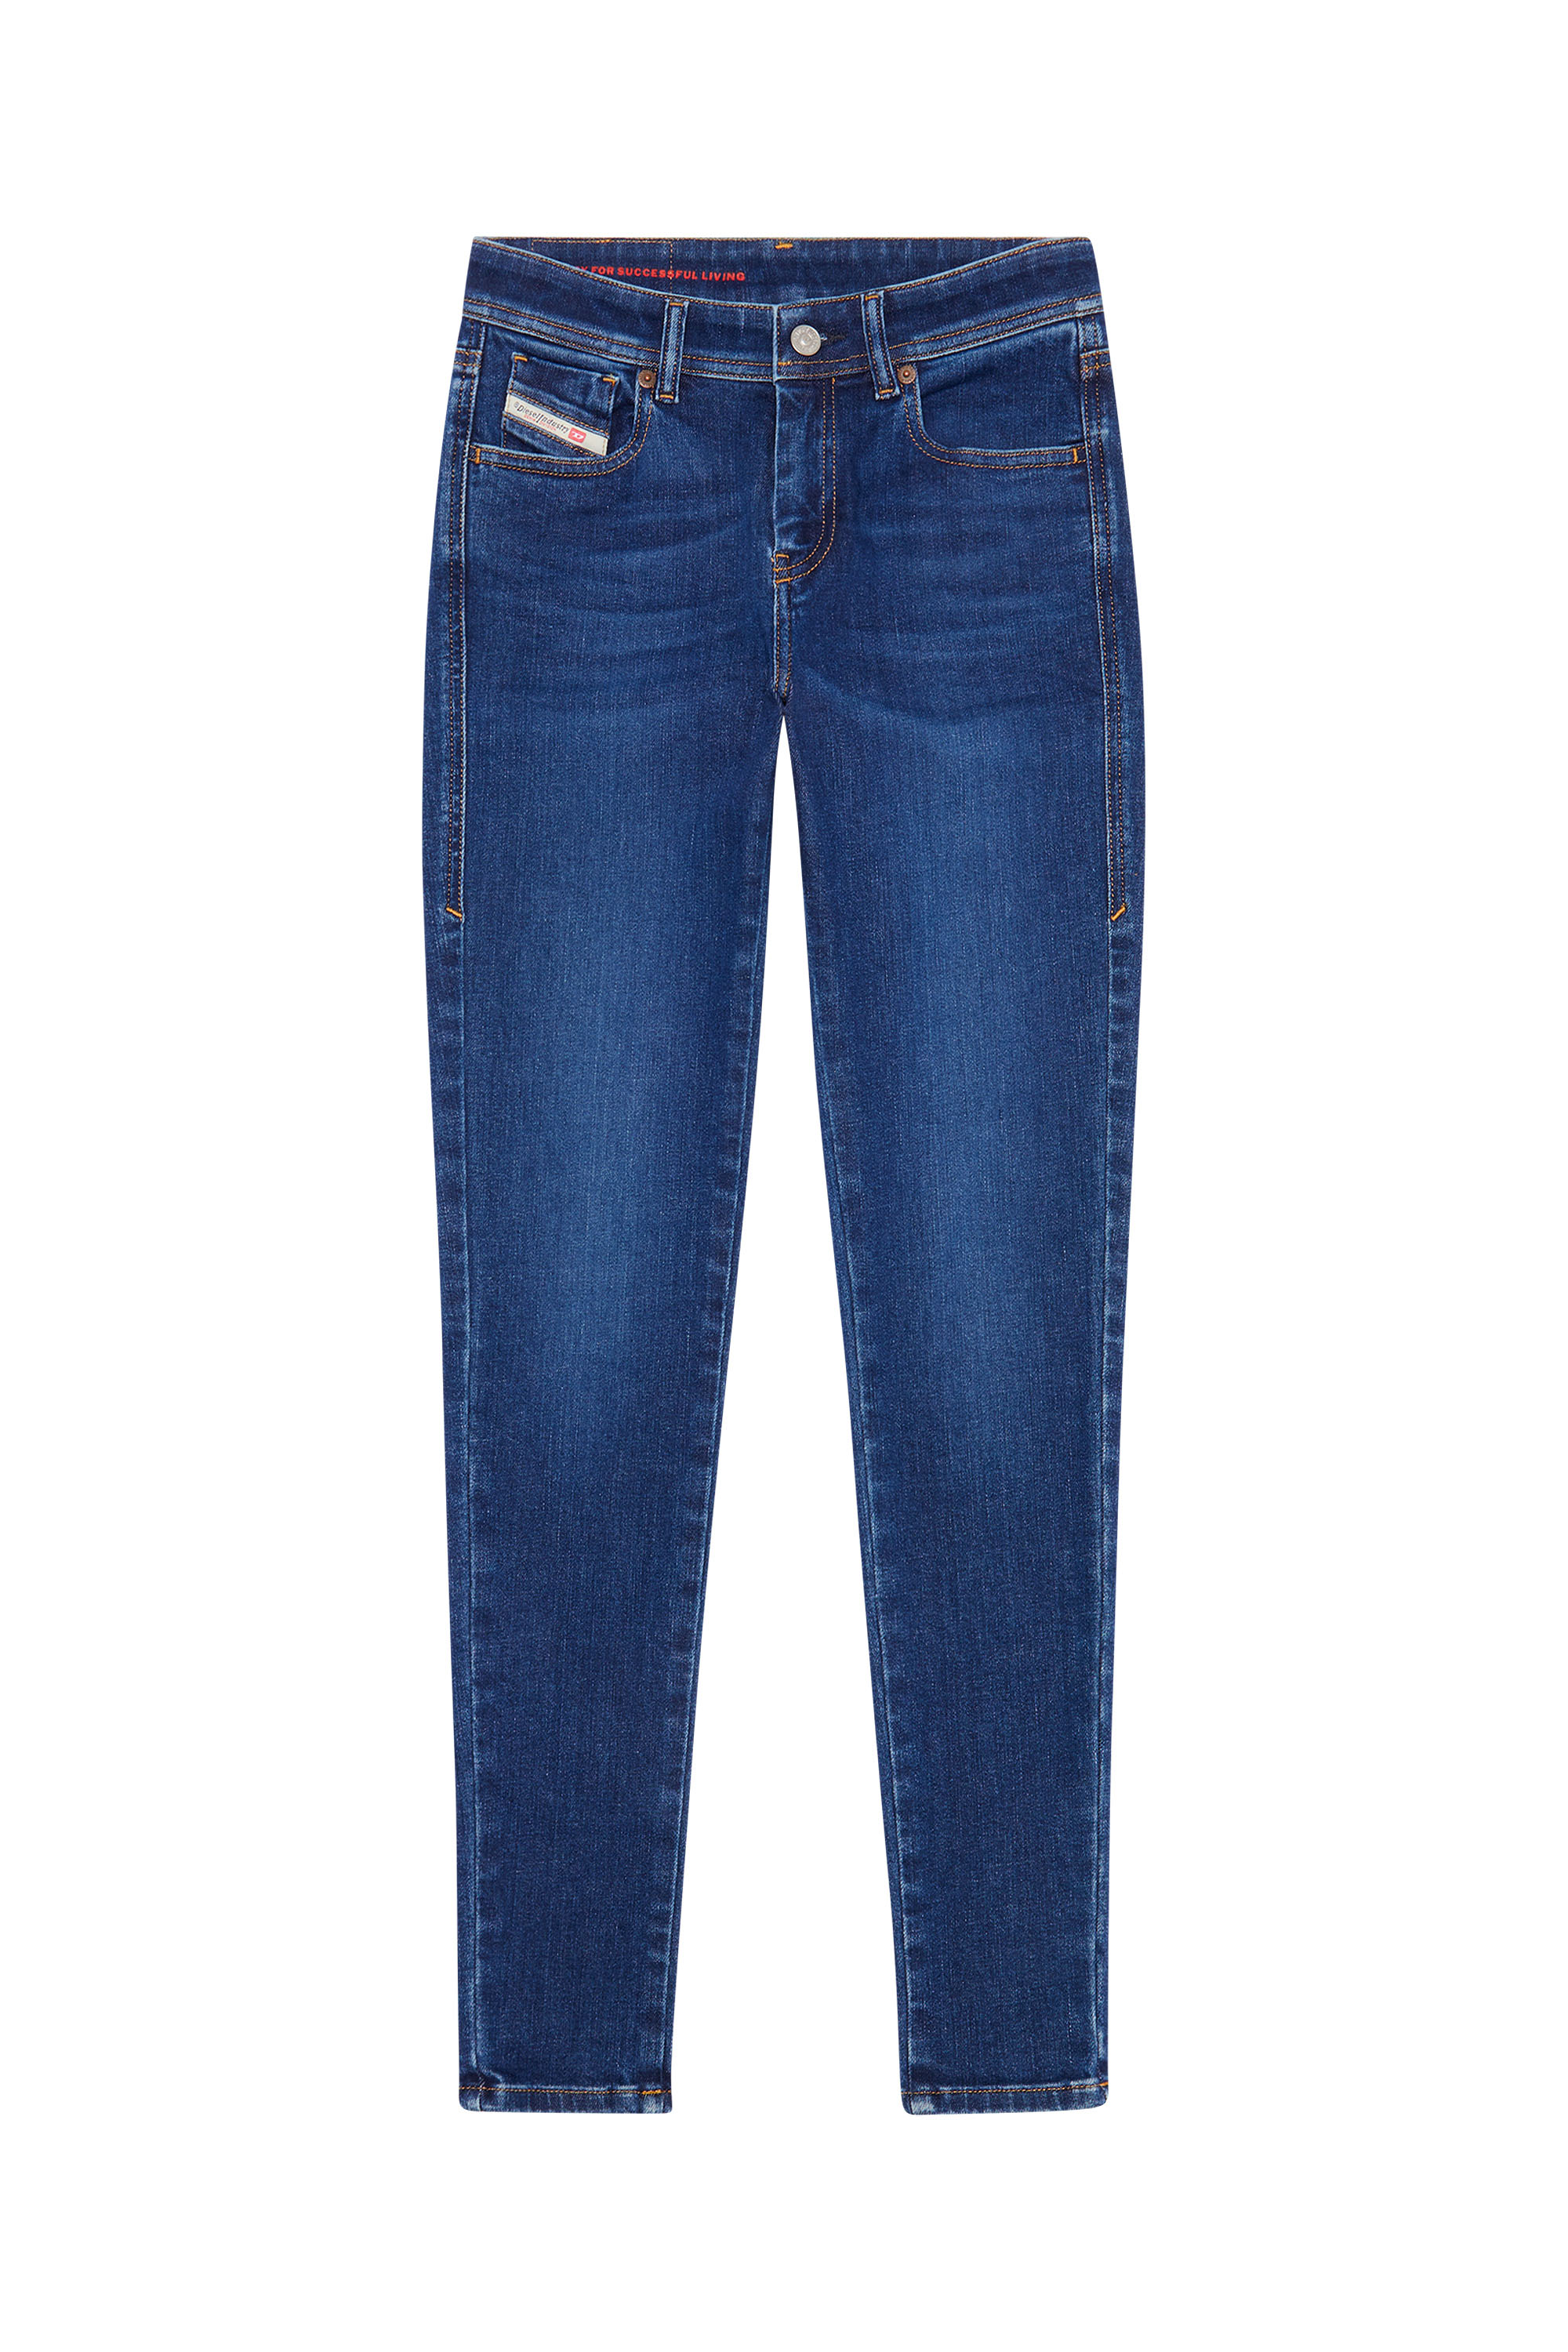 Damen Bekleidung Jeans Röhrenjeans DIESEL Denim 2017 Slandy Skinny-Jeans in Blau 